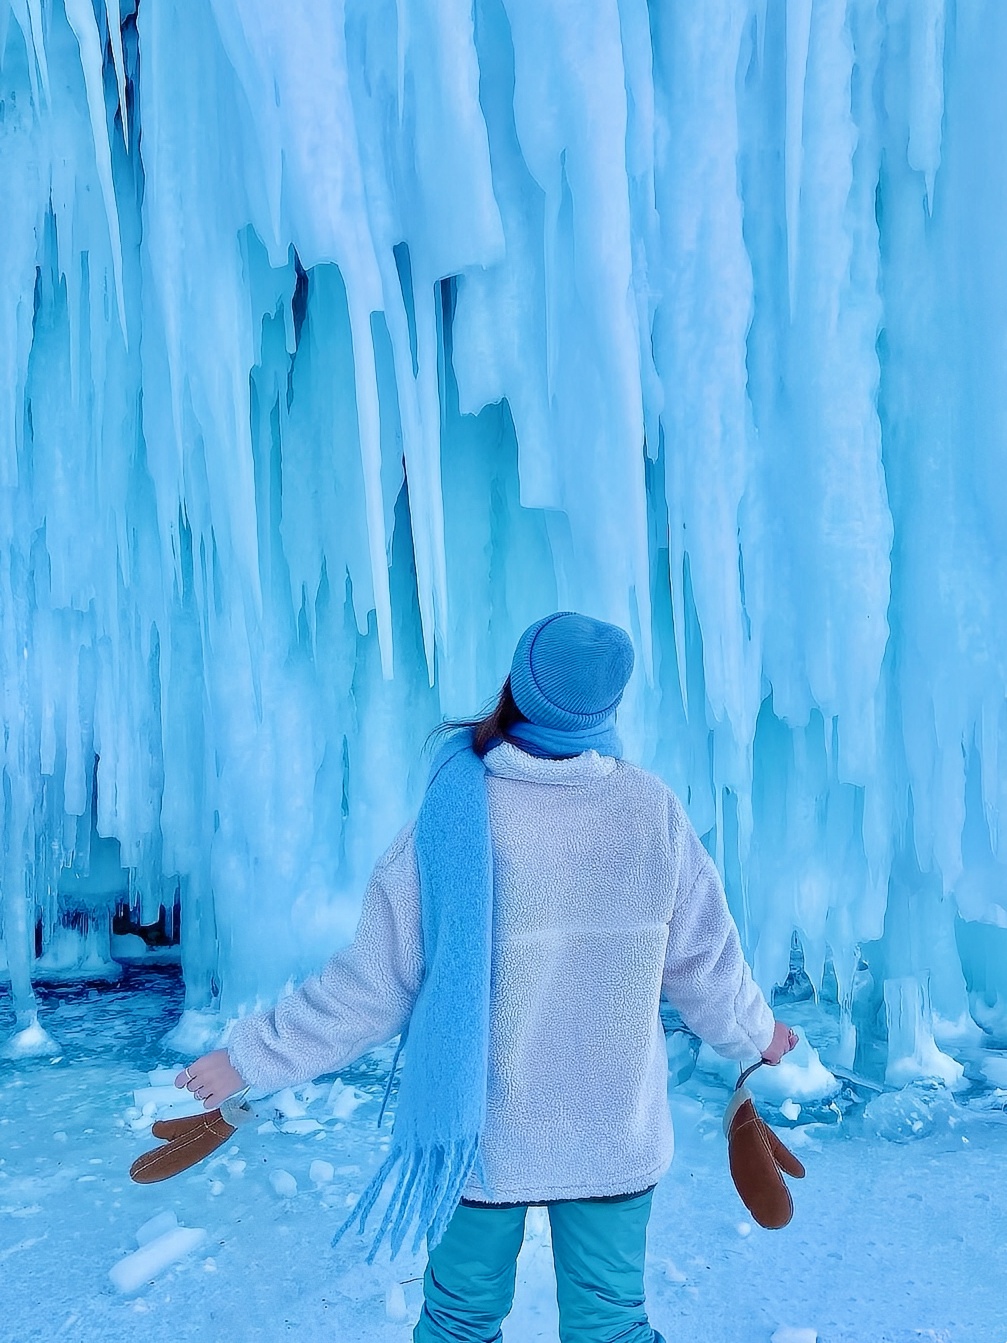 🔥我不允许还有人没看过贝加尔湖的蓝冰❗️